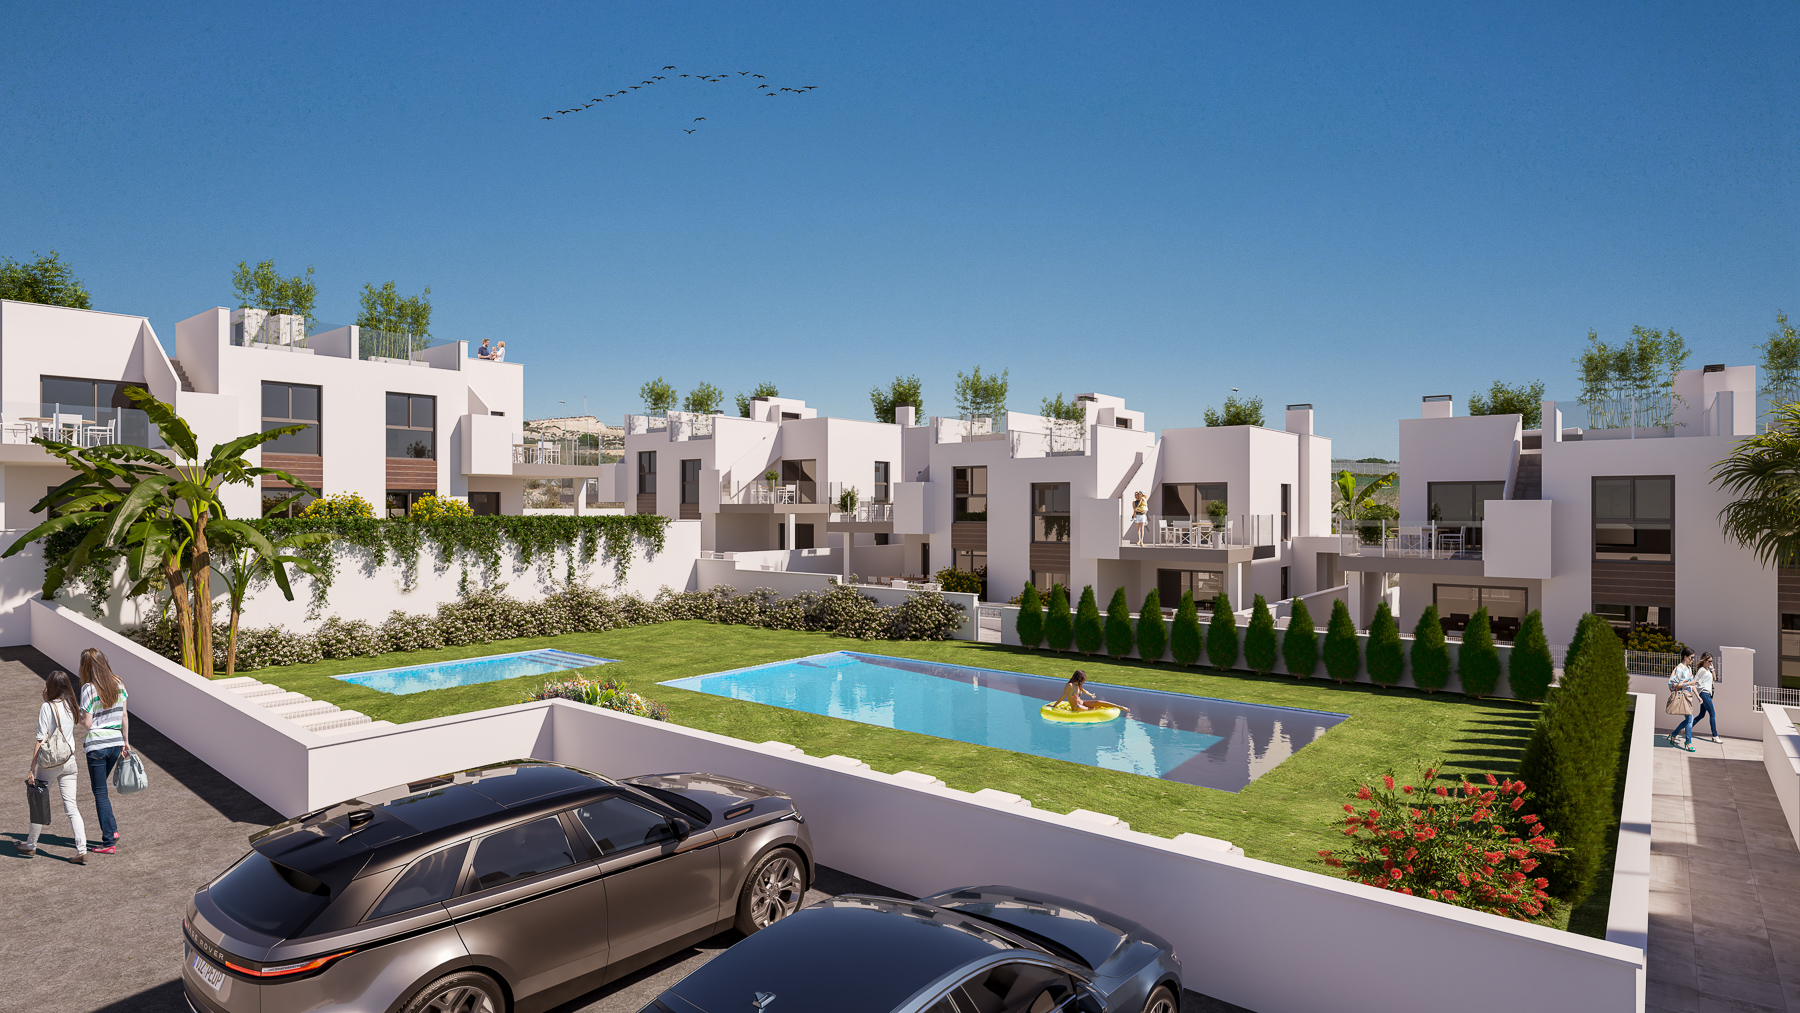 Vistabella golf new-build apartments and villas by Villas Fox-17